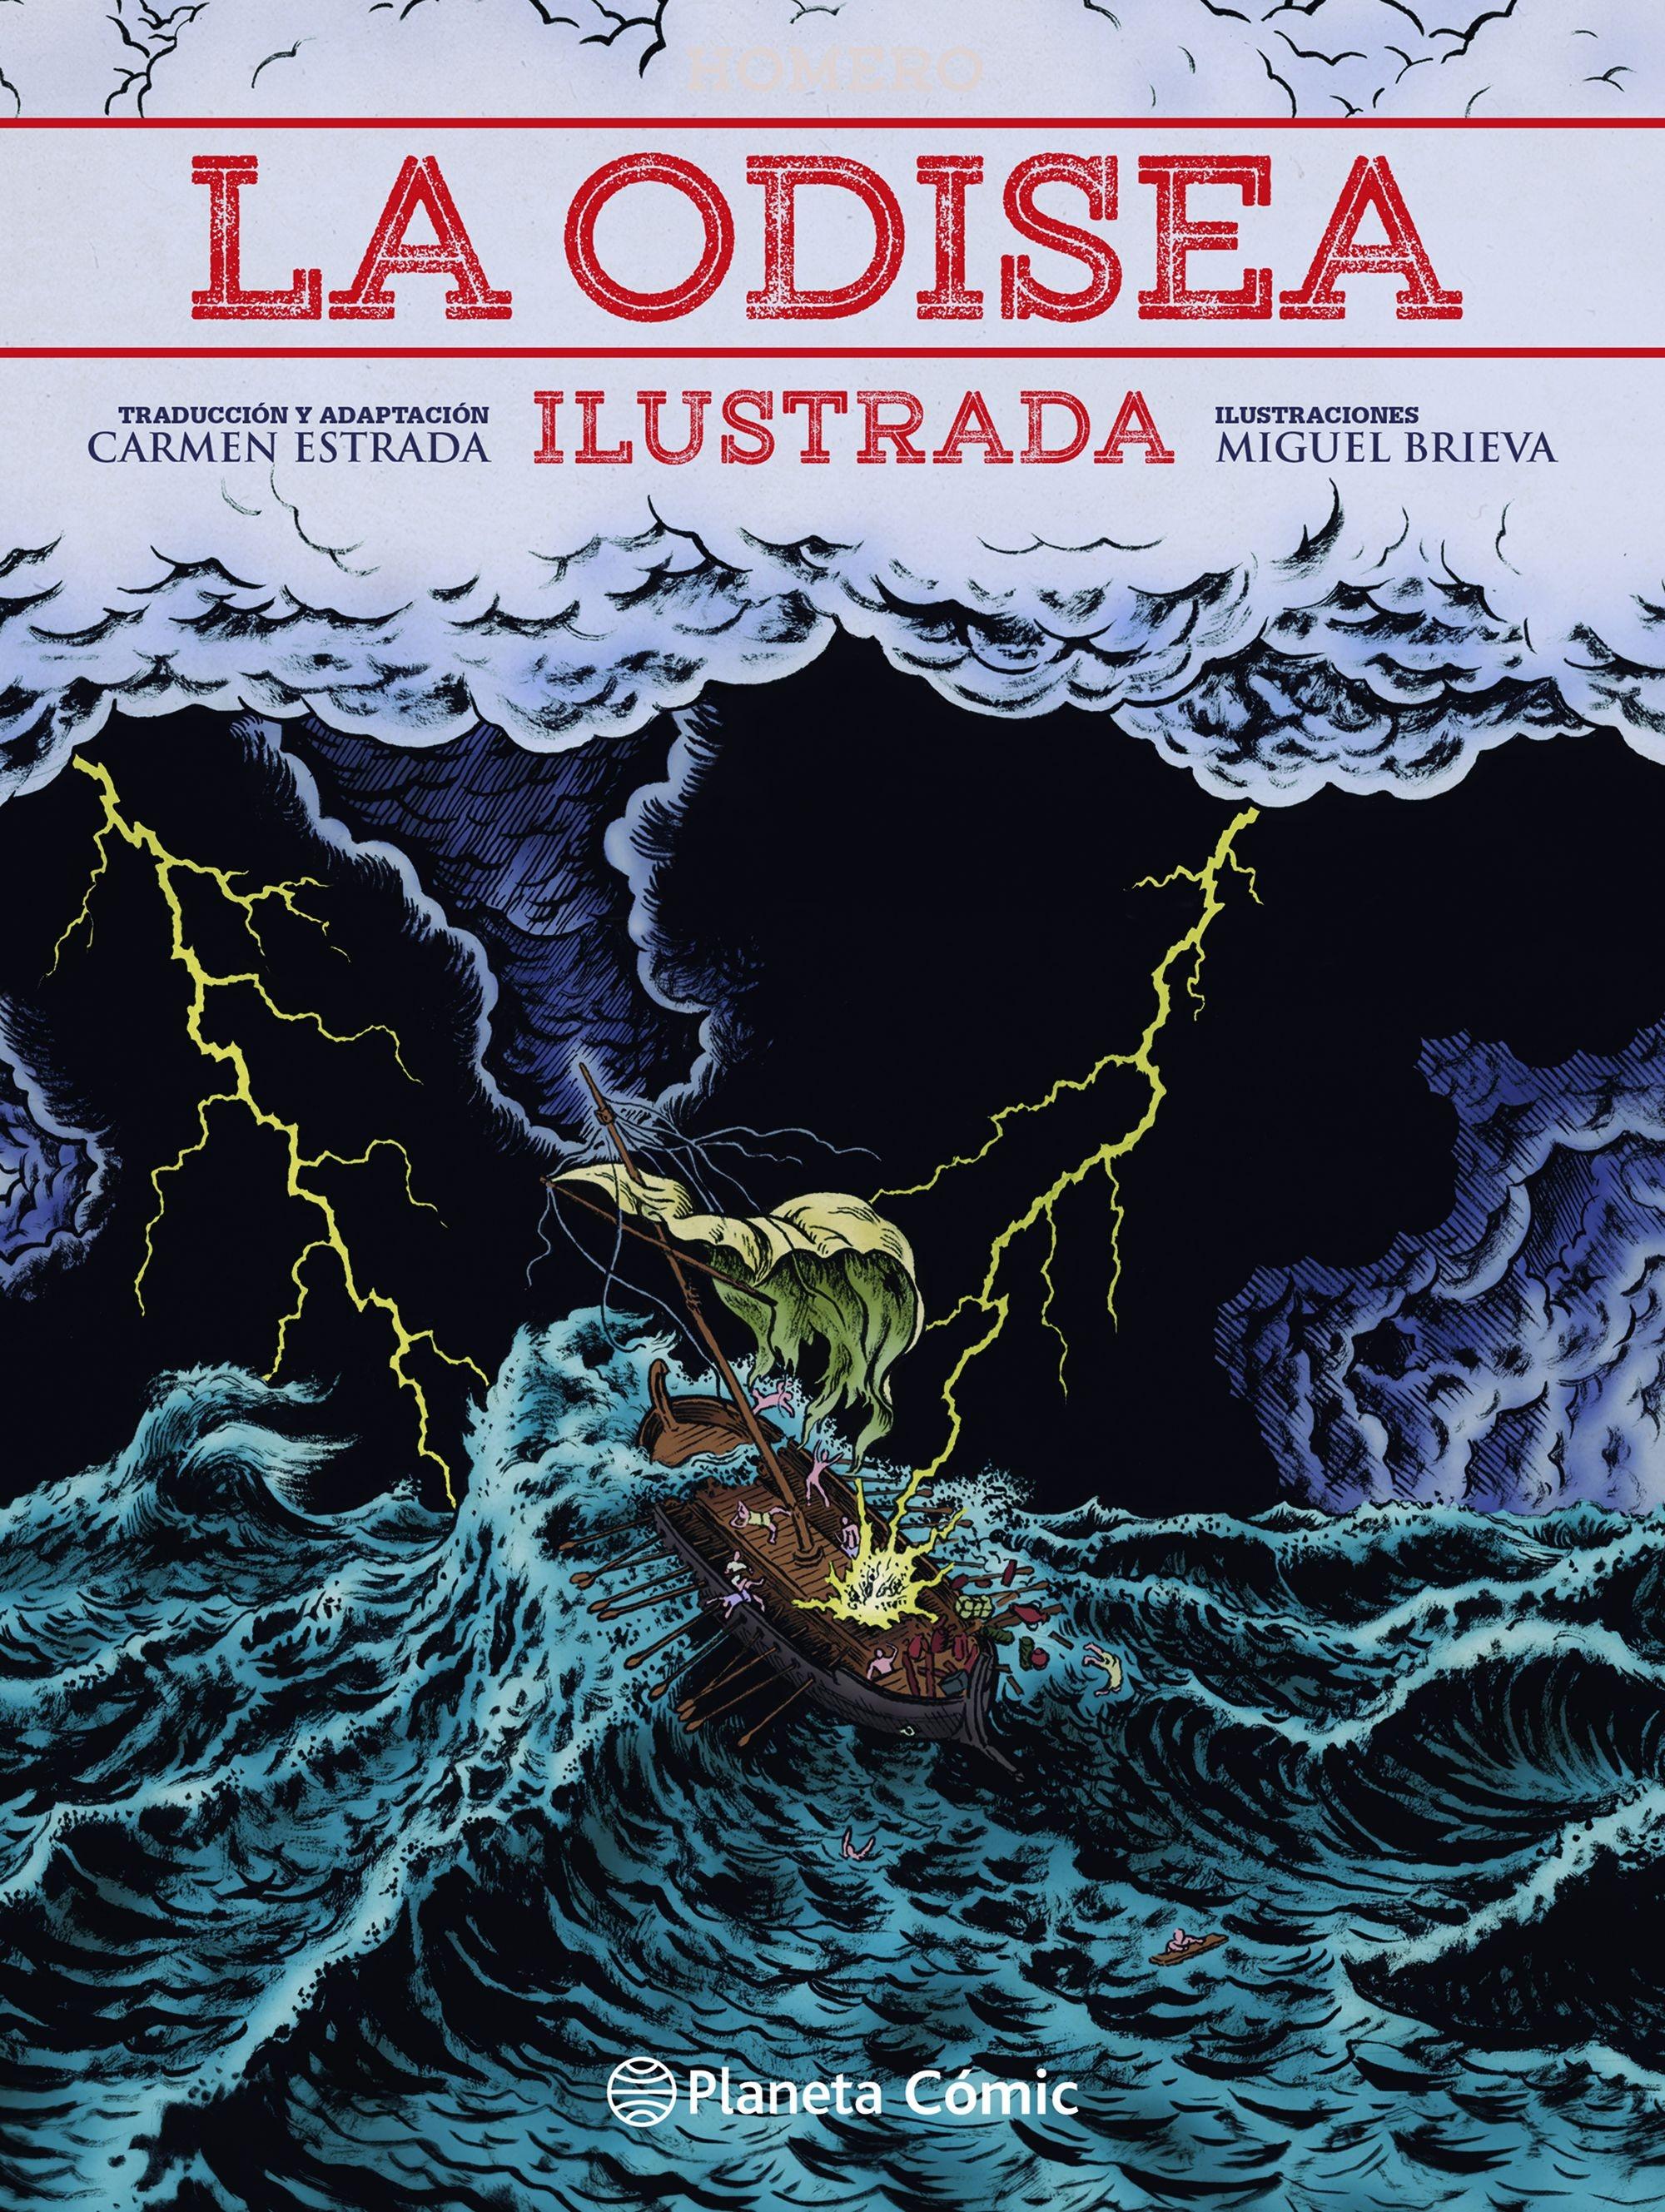 La Odisea Ilustrada por Miguel Brieva "Traducción de Carmen Estrada"